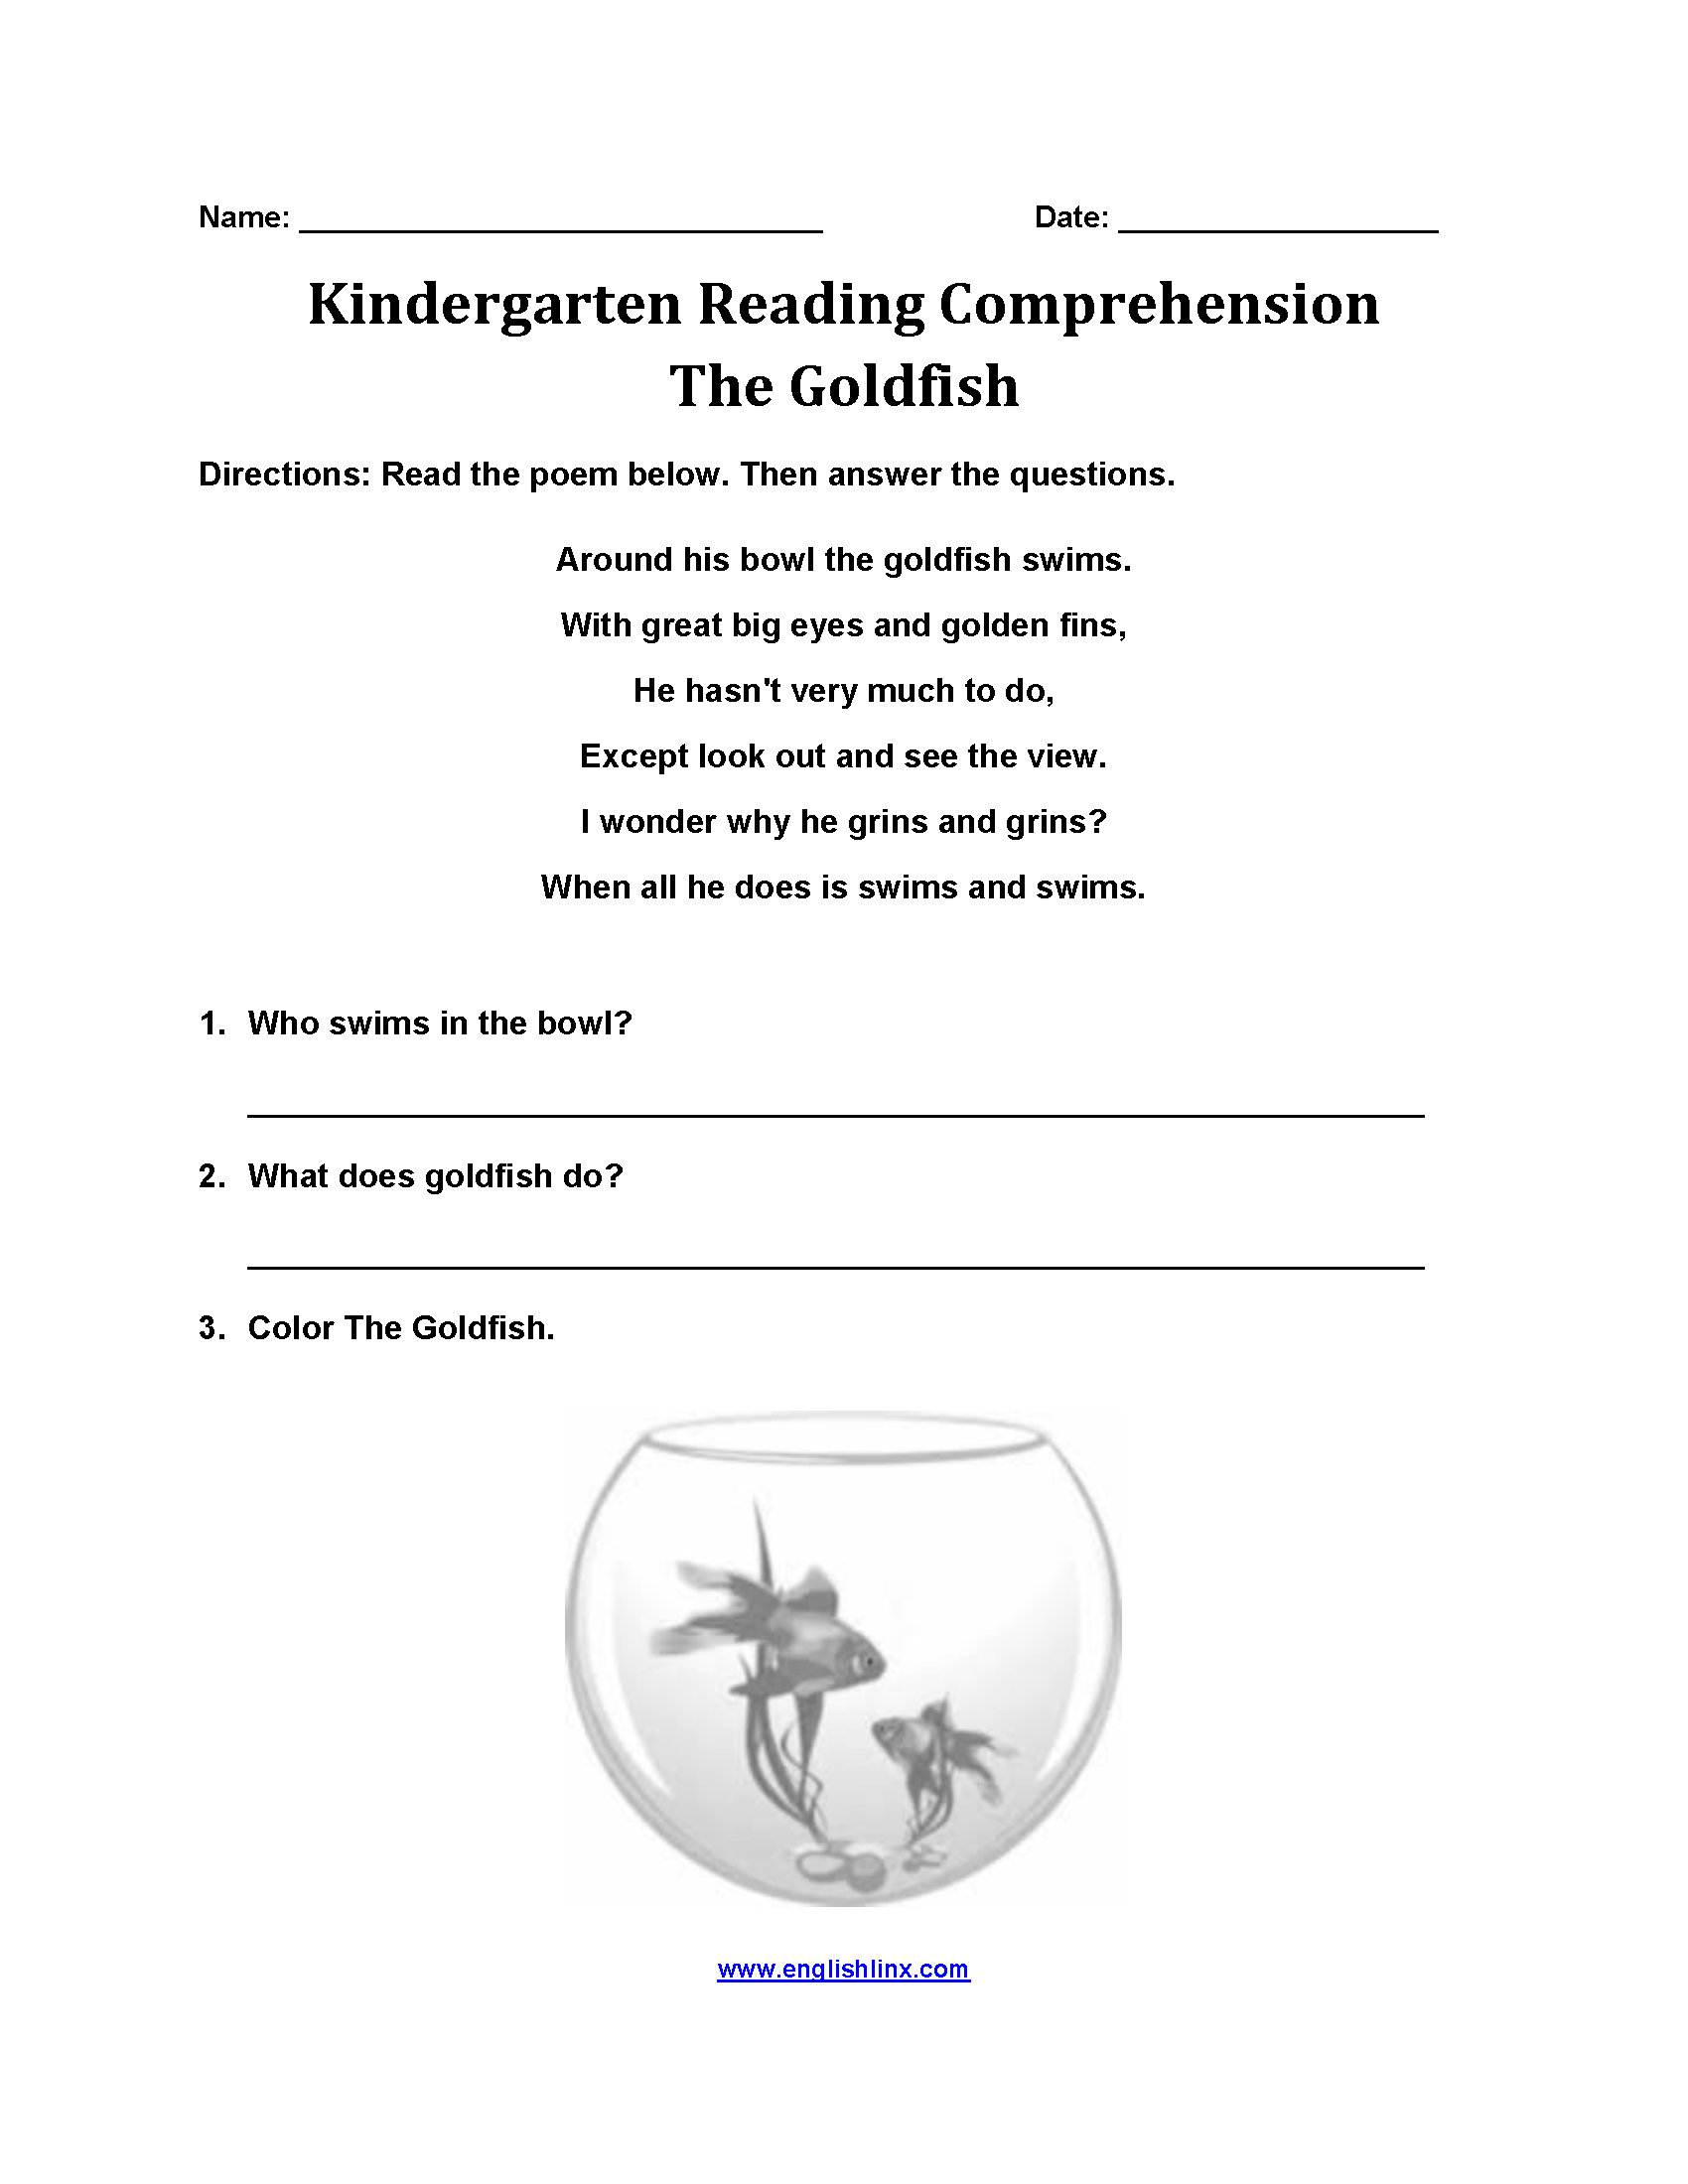 The Goldfish Kindergarten Reading Comprehension Worksheets